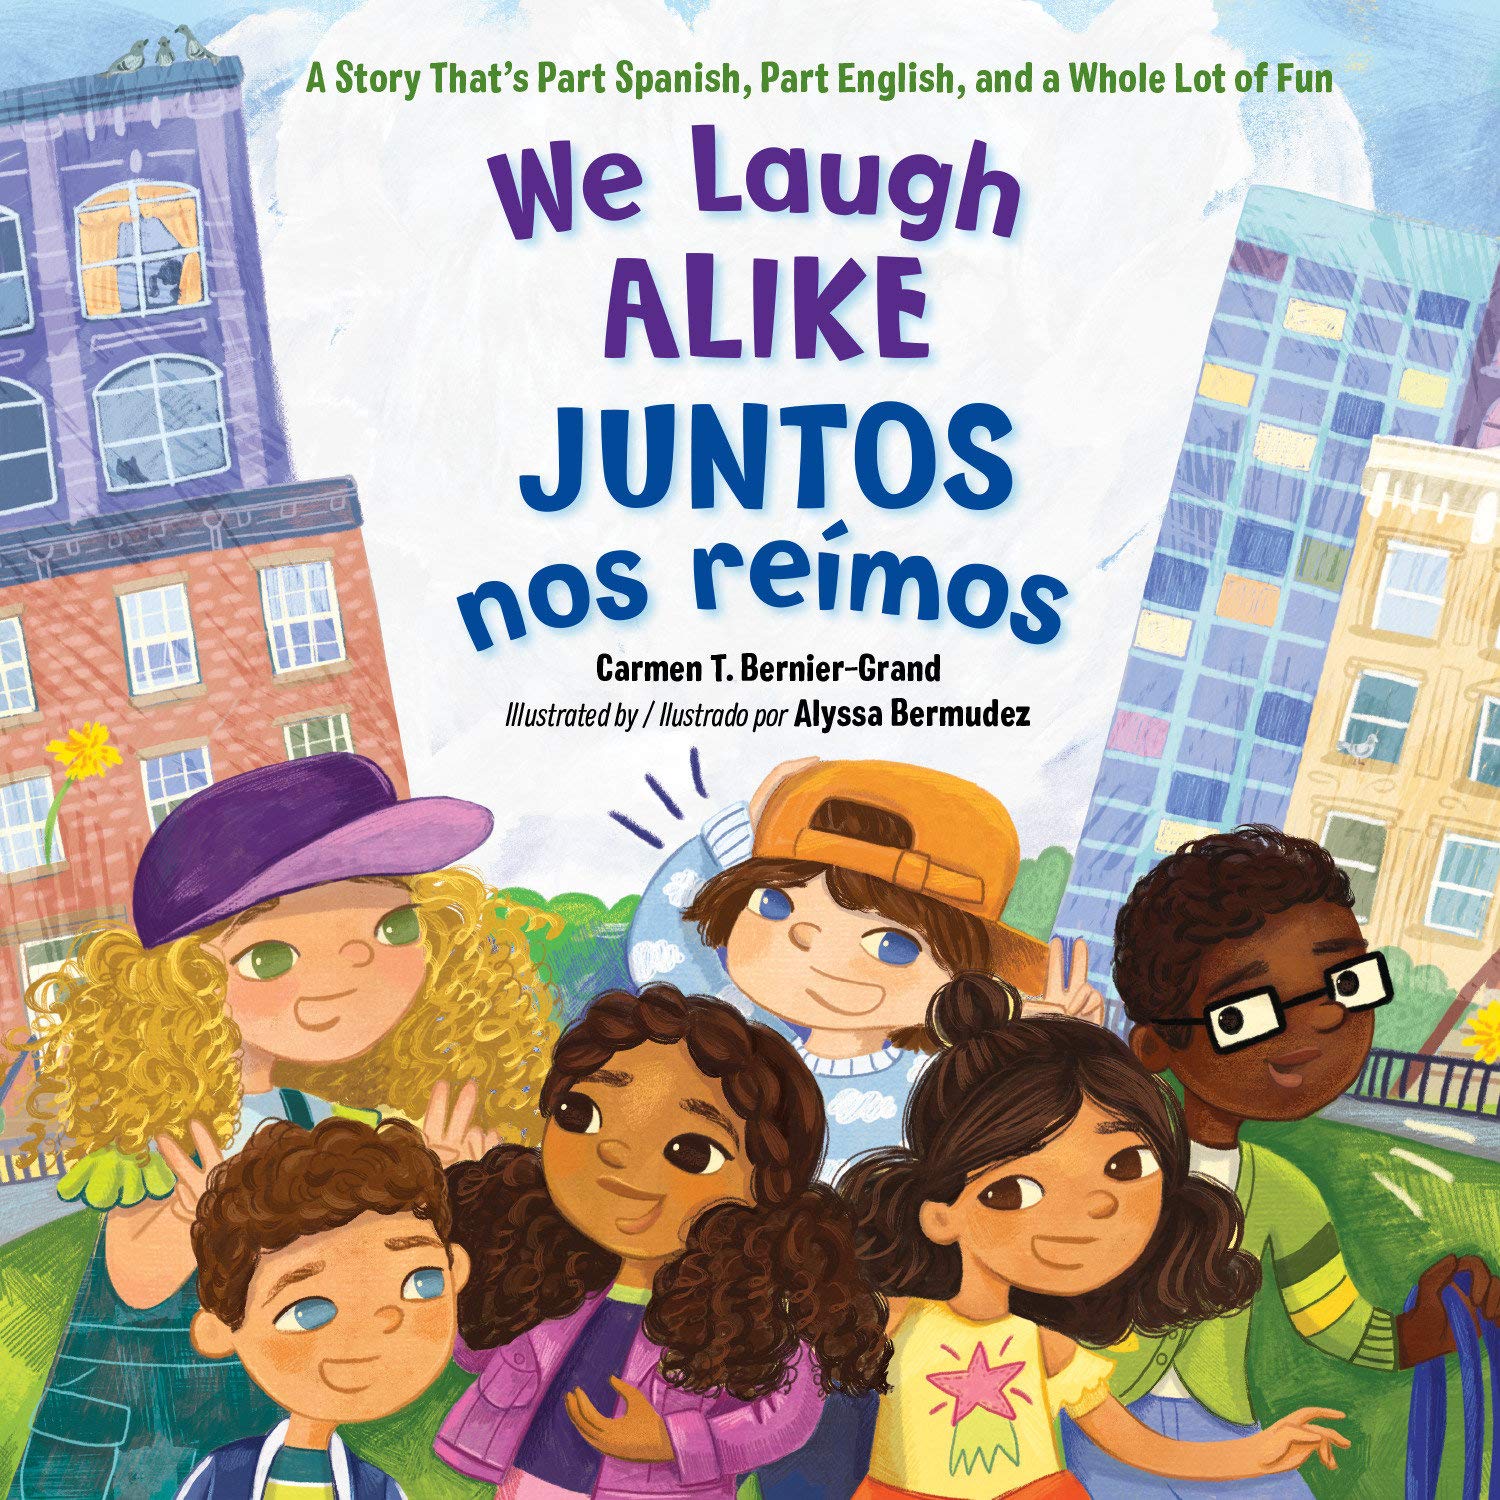 We Laugh Alike / Juntos nos reímos by Carmen T. Bernier-Grand